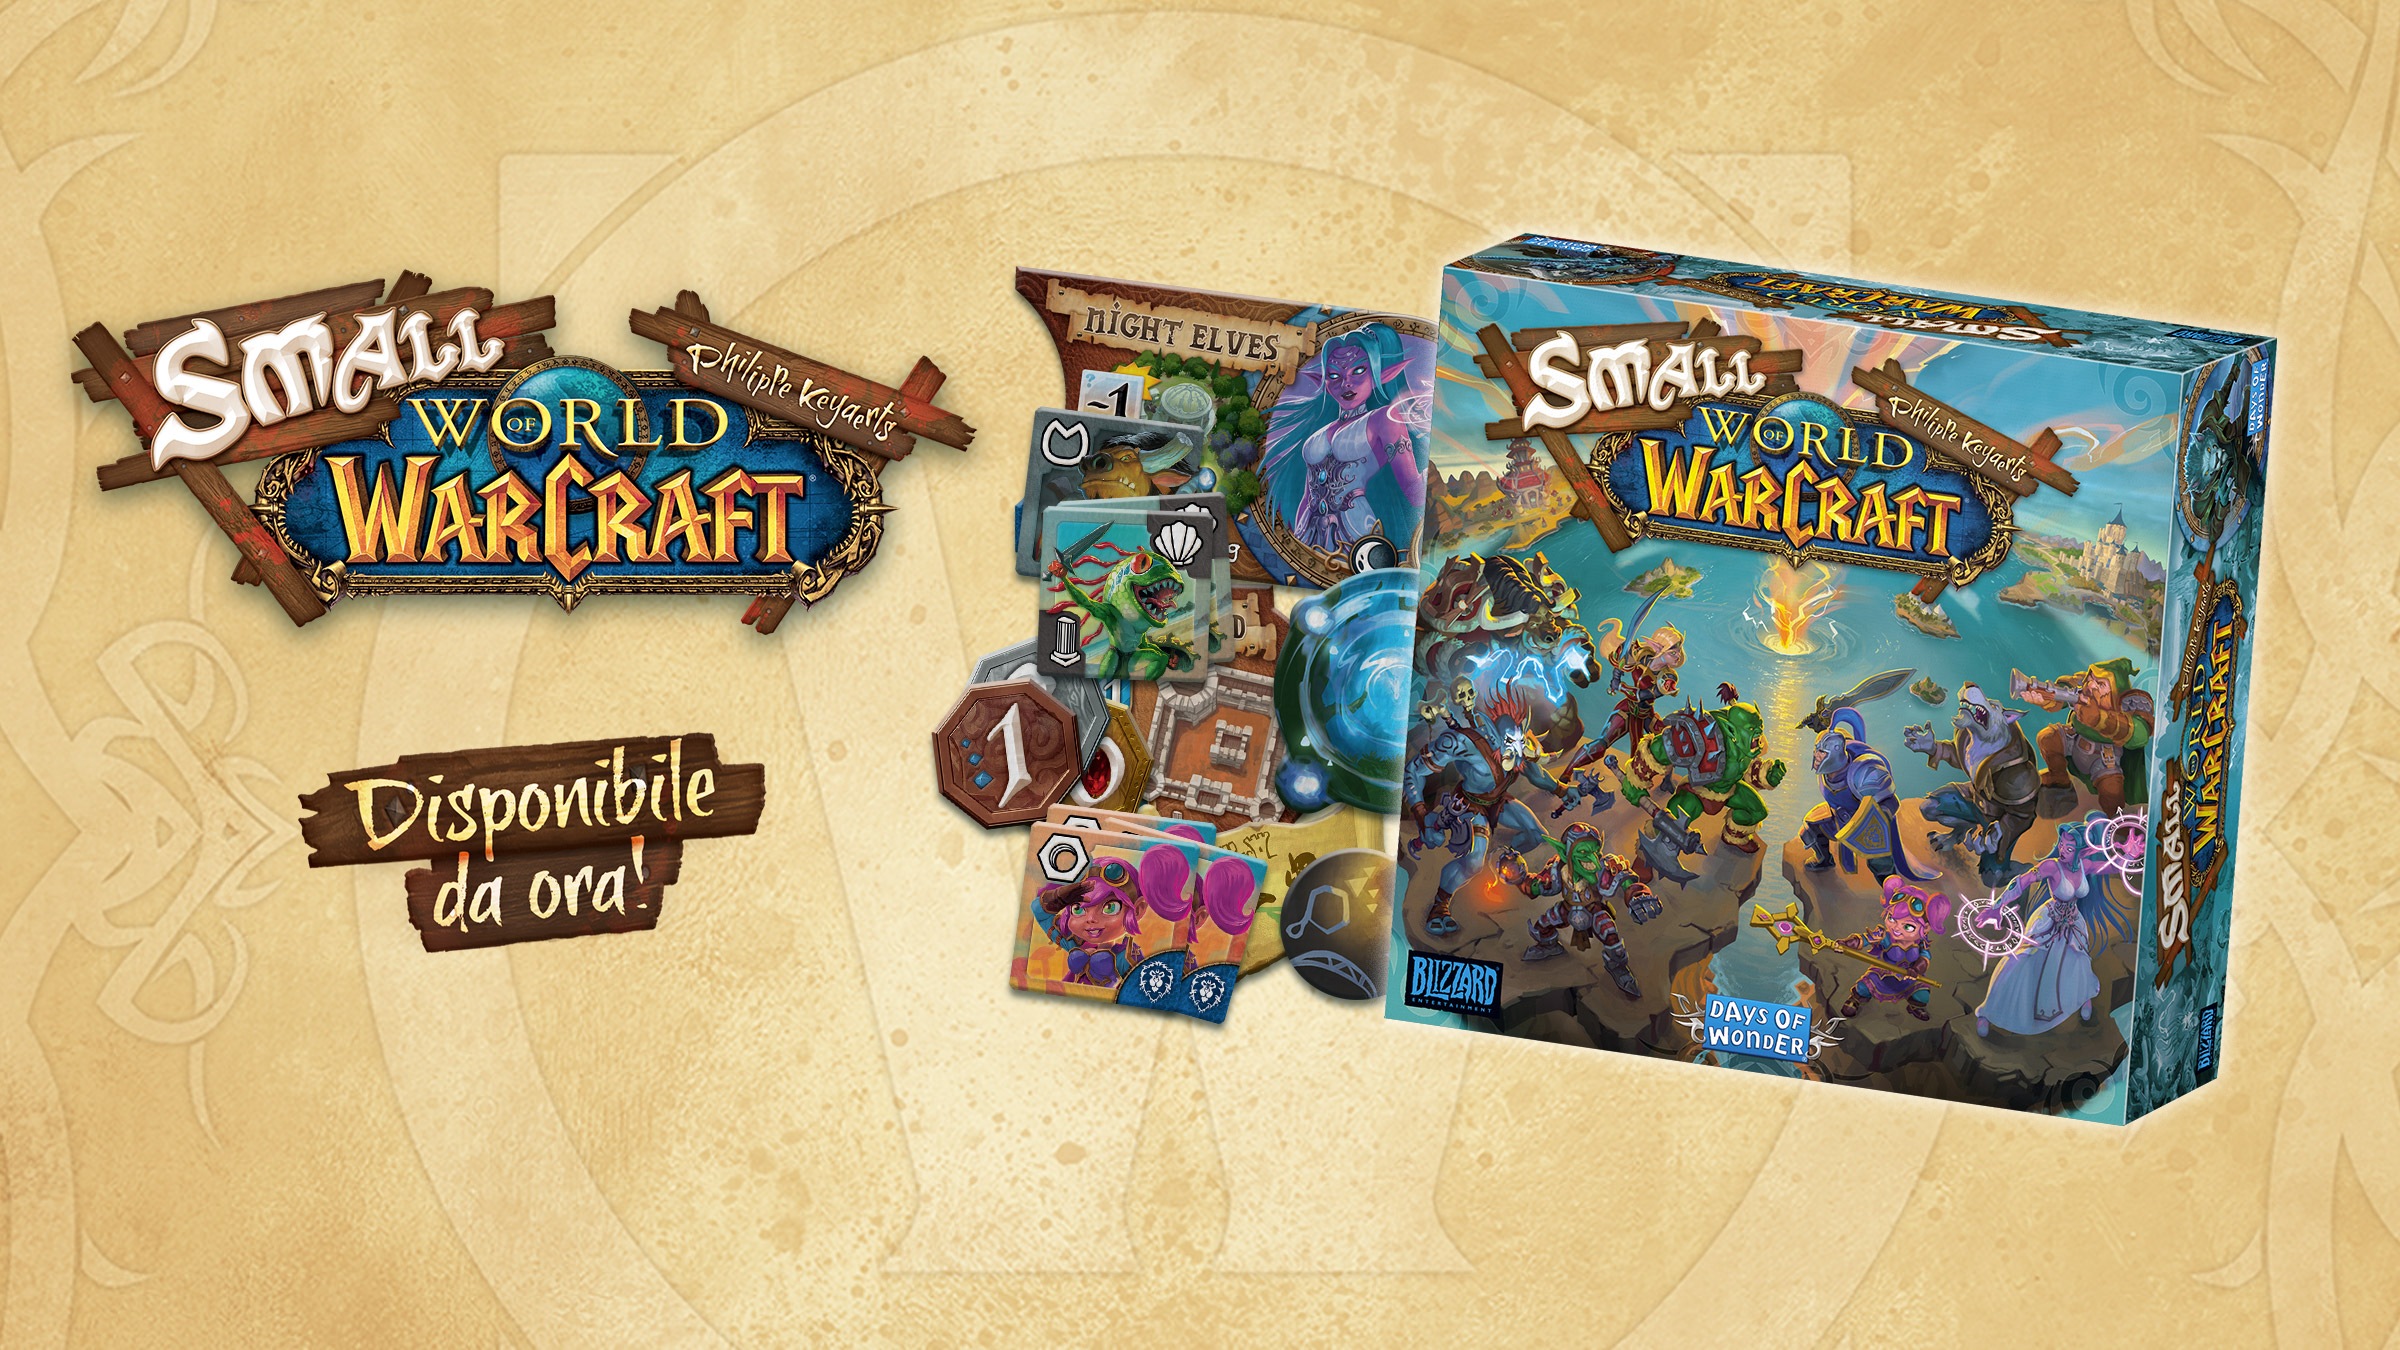 Small World of Warcraft è disponibile!